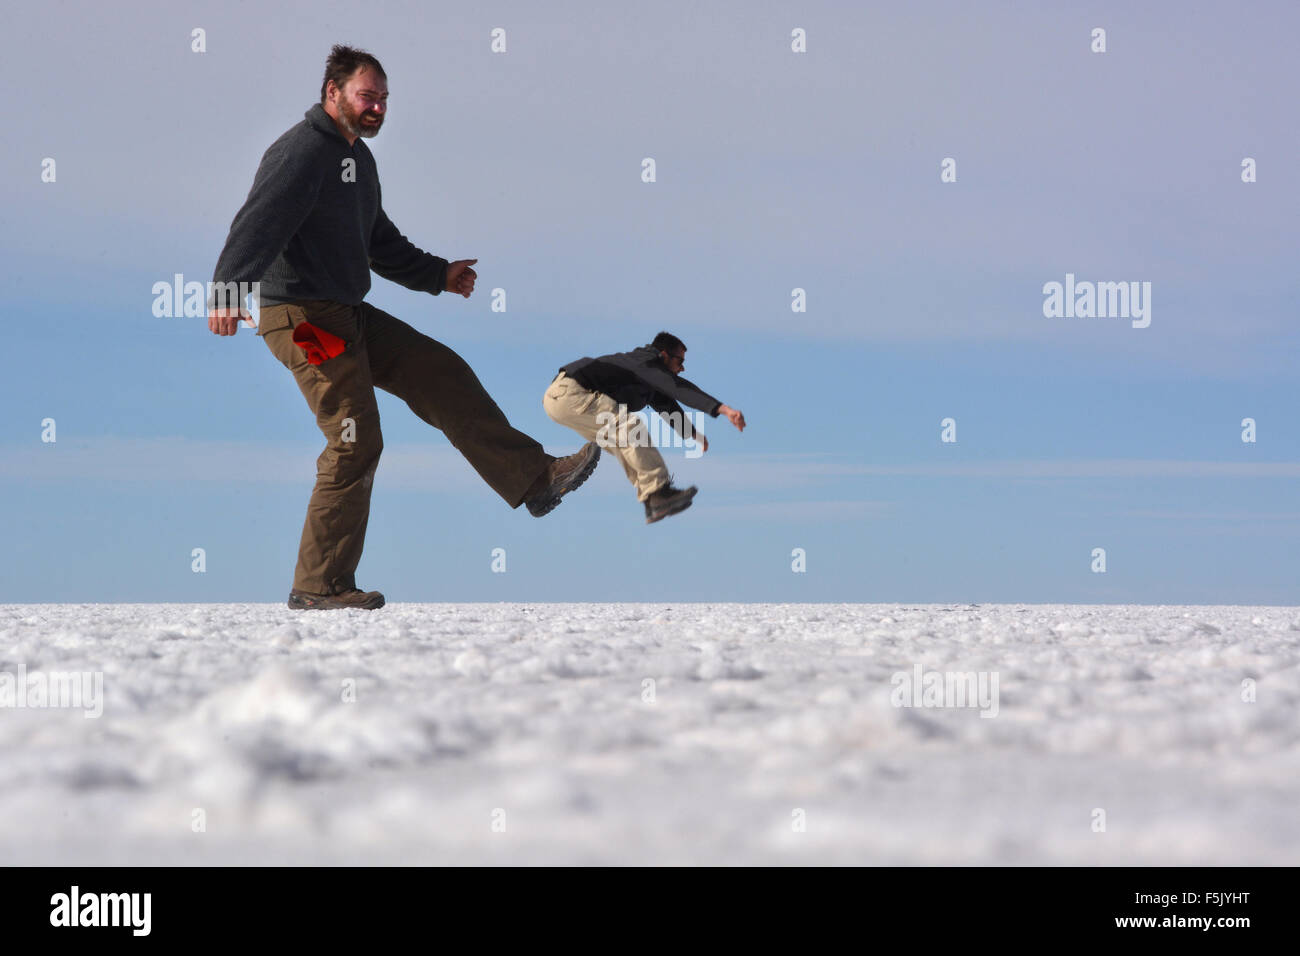 Ilusión óptica, el hombre ser pateado, el salar de Uyuni, Bolivia Foto de stock